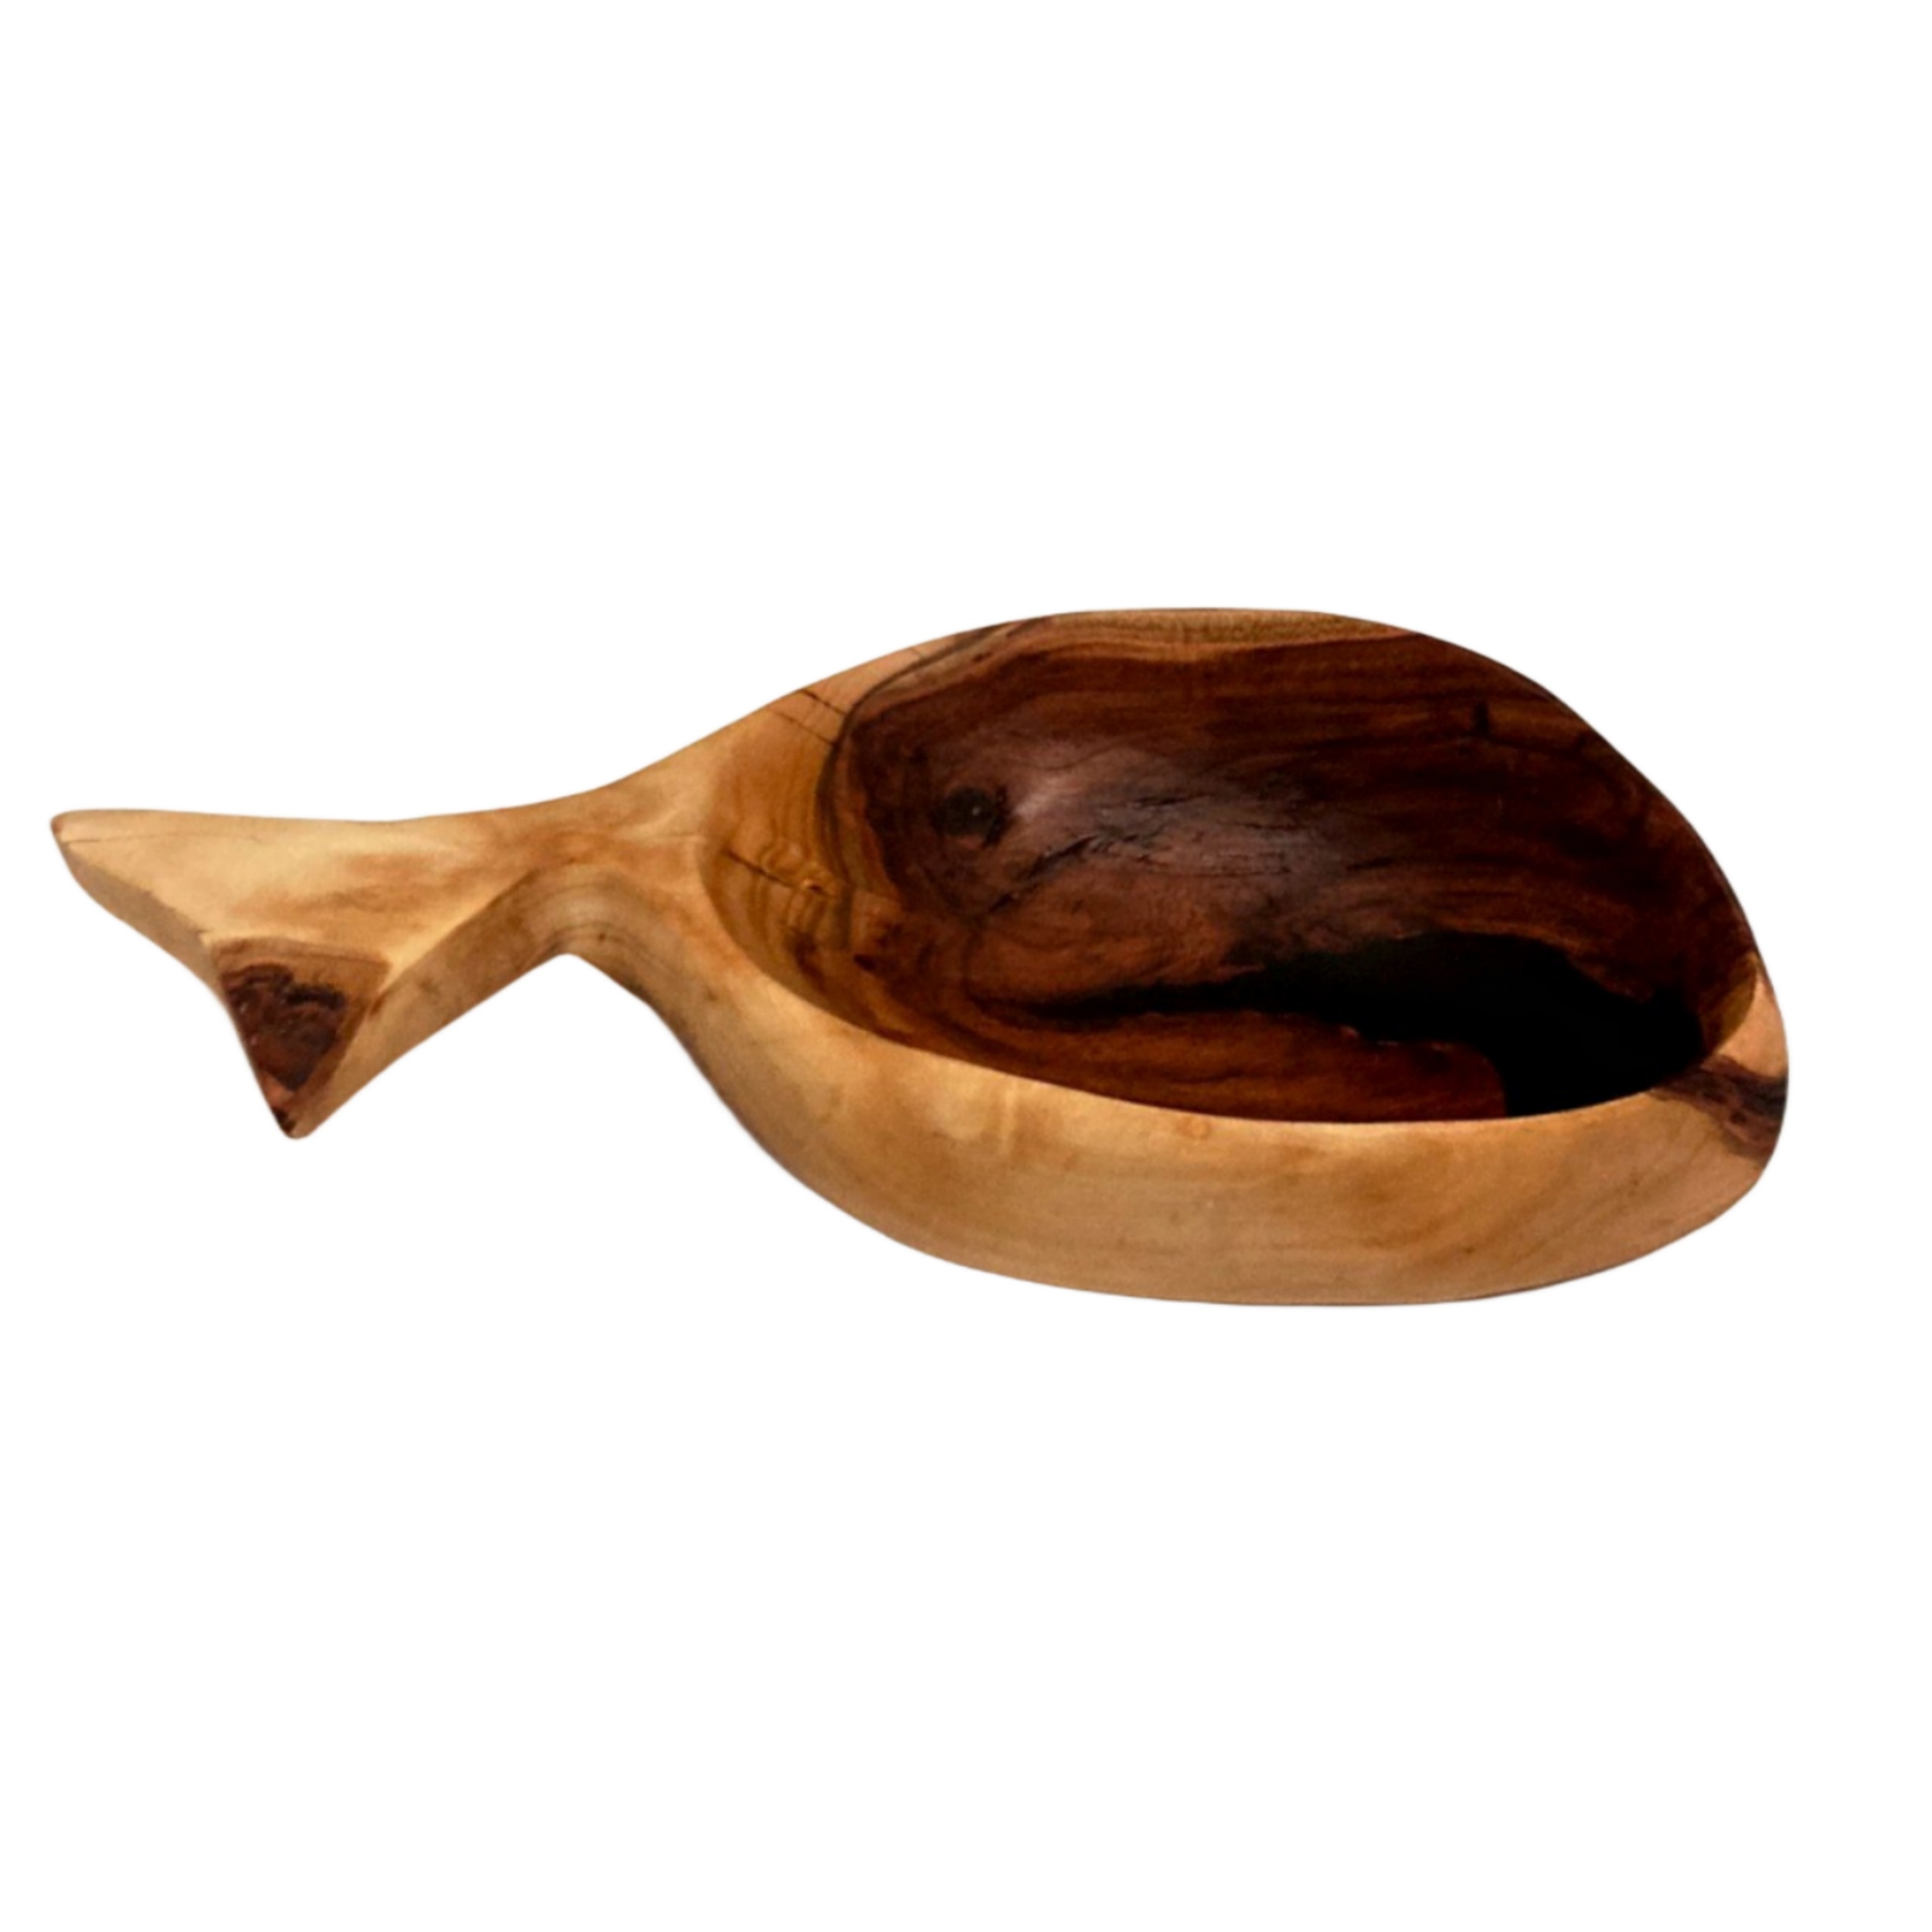 ظرف چوبی مدل ماهی